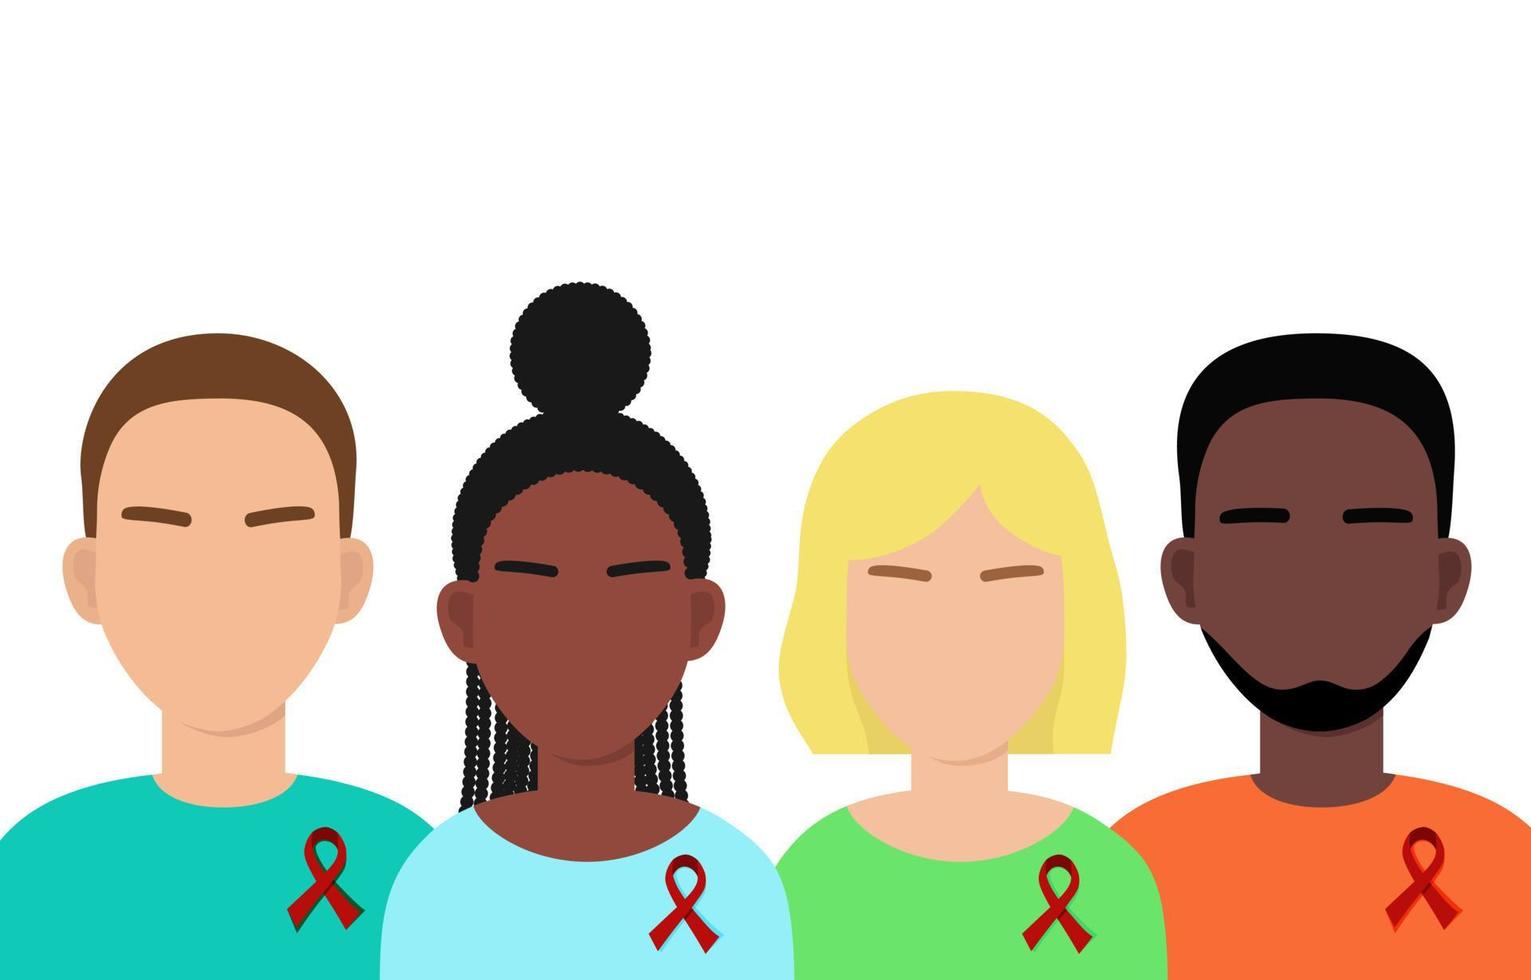 personnes de races différentes avec ruban rouge. symbole de la solidarité avec les personnes séropositives et vivant avec le sida. illustration vectorielle isolée vecteur